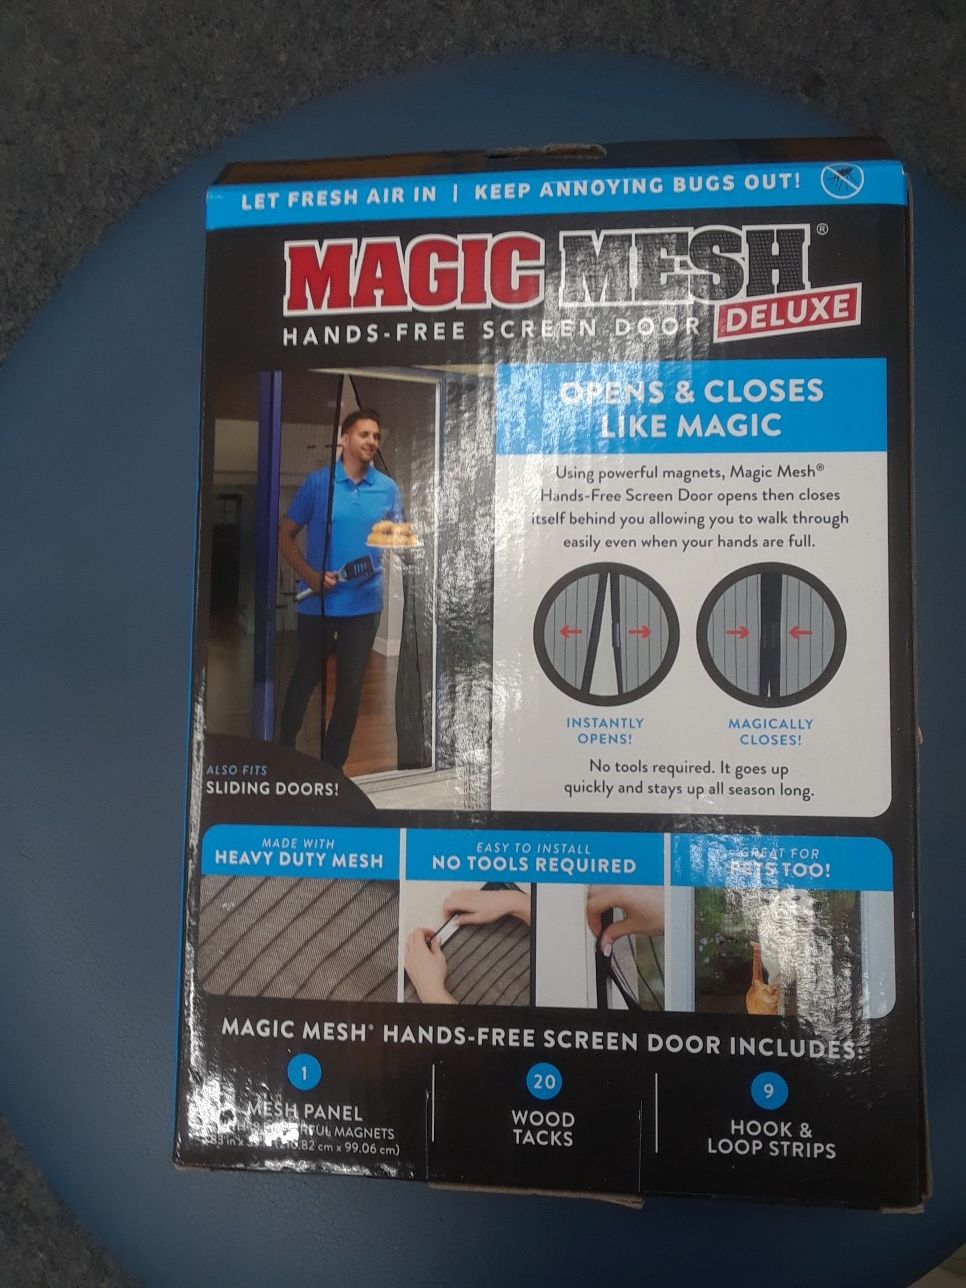 Magic mesh hands free screen door